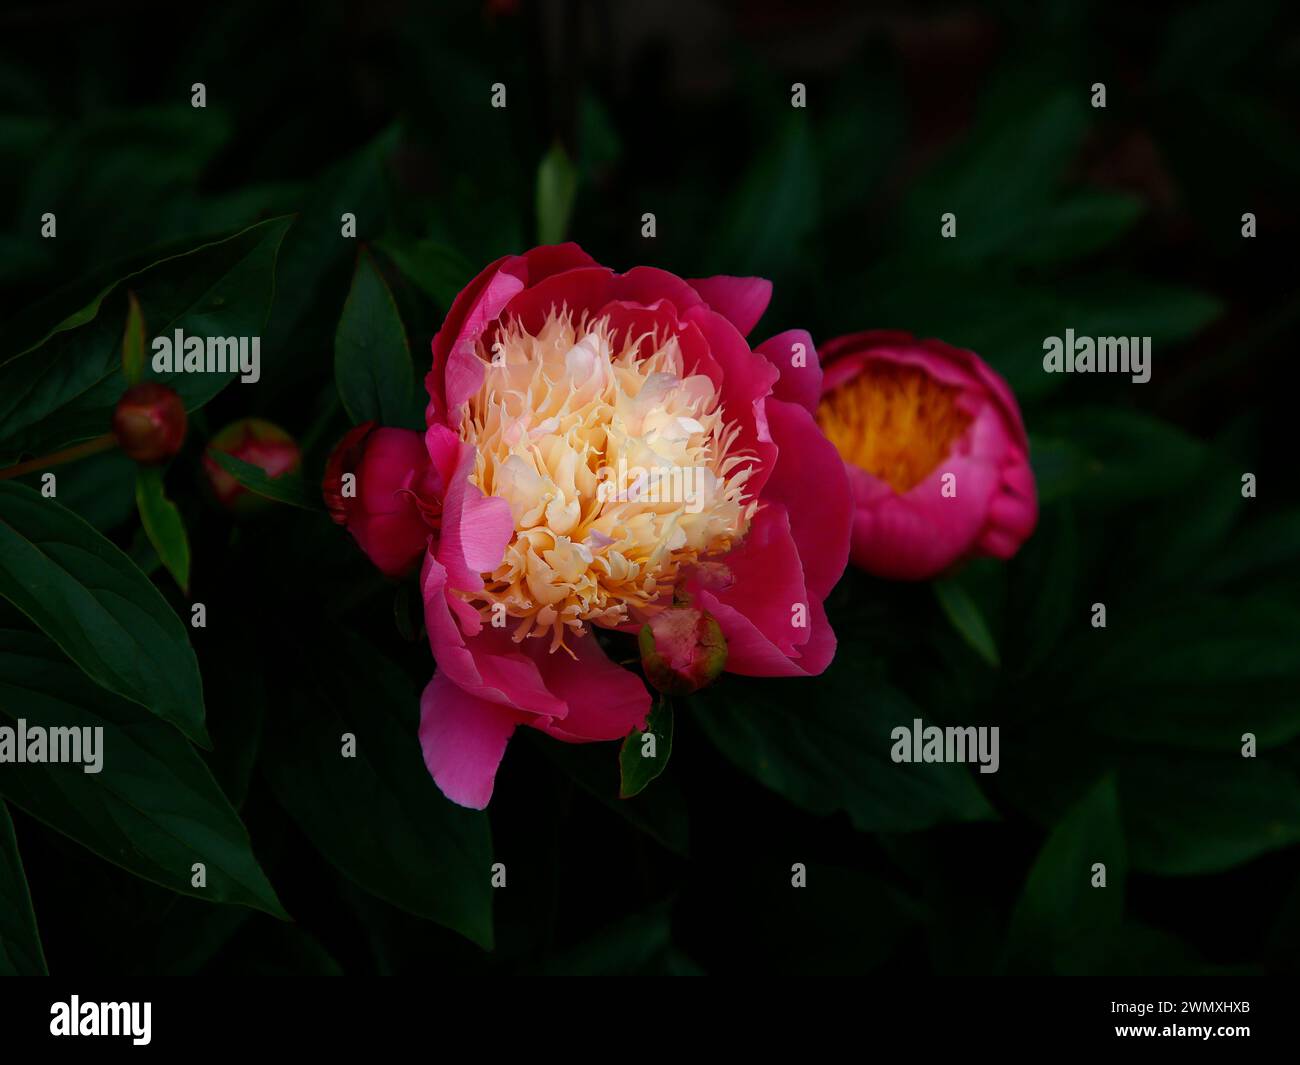 Nahaufnahme der karminrosa Creme Blume der mehrjährigen Gartenpflanze paeonia lactiflora Schüssel der Schönheit. Stockfoto